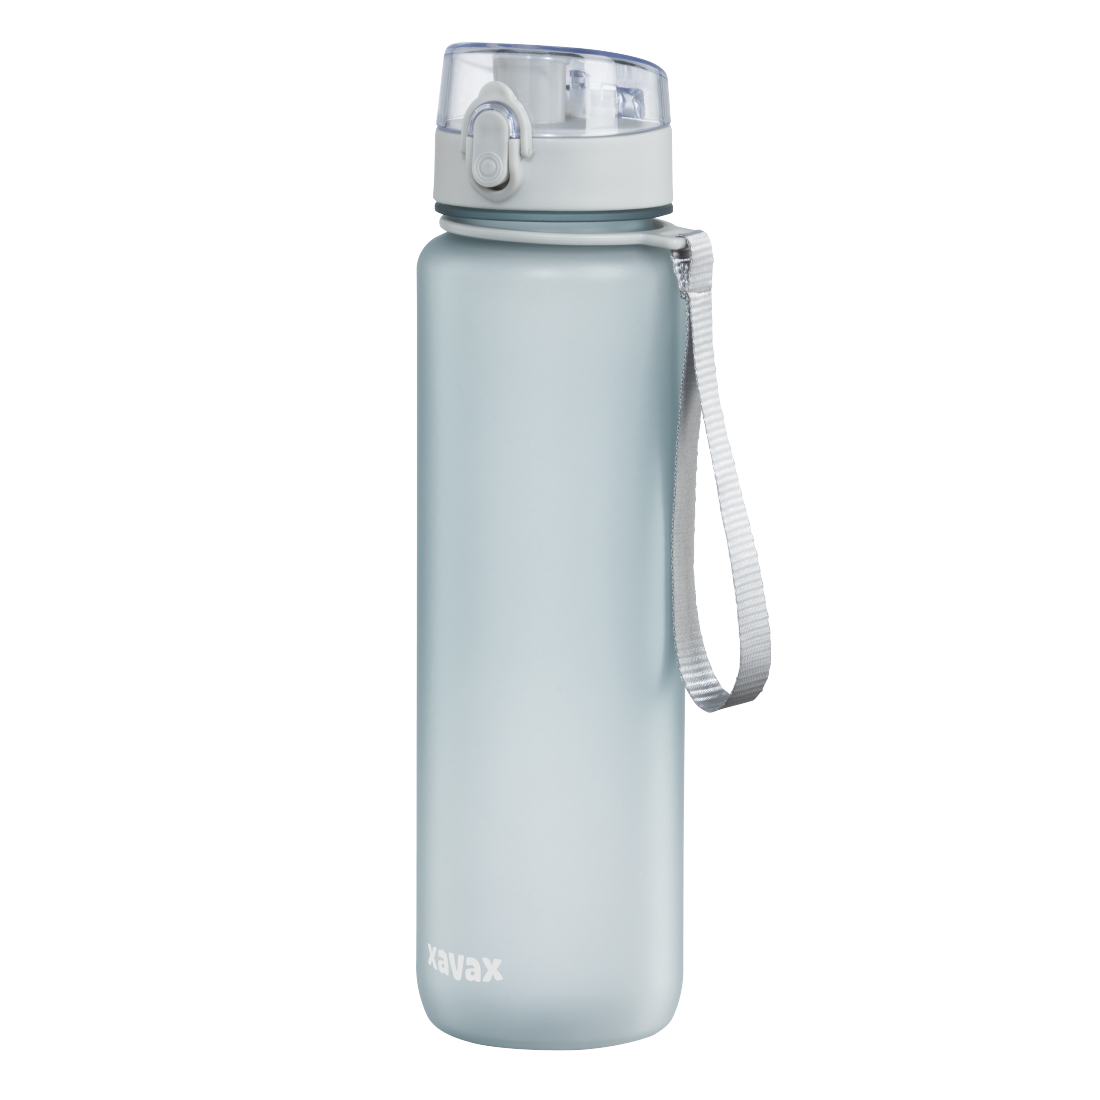 abx Druckfähige Abbildung - Xavax, Sport-Trinkflasche, 1 l, auslaufsicher, Schlaufe, Einhandverschluss, Blau